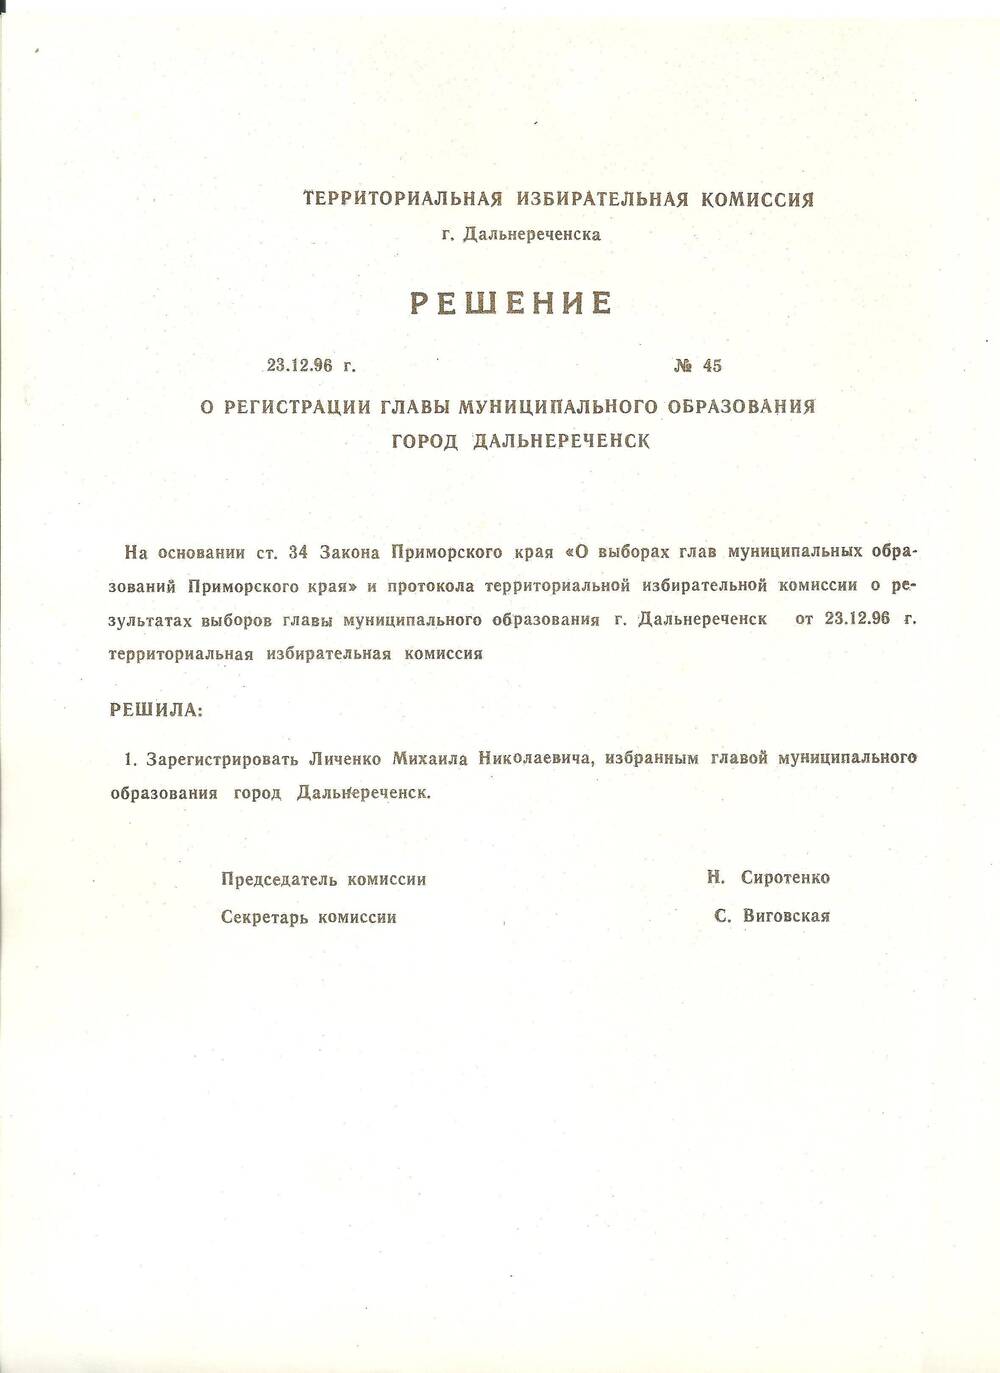 Решение за № 45 о регистрации главы г. Дальнереченска